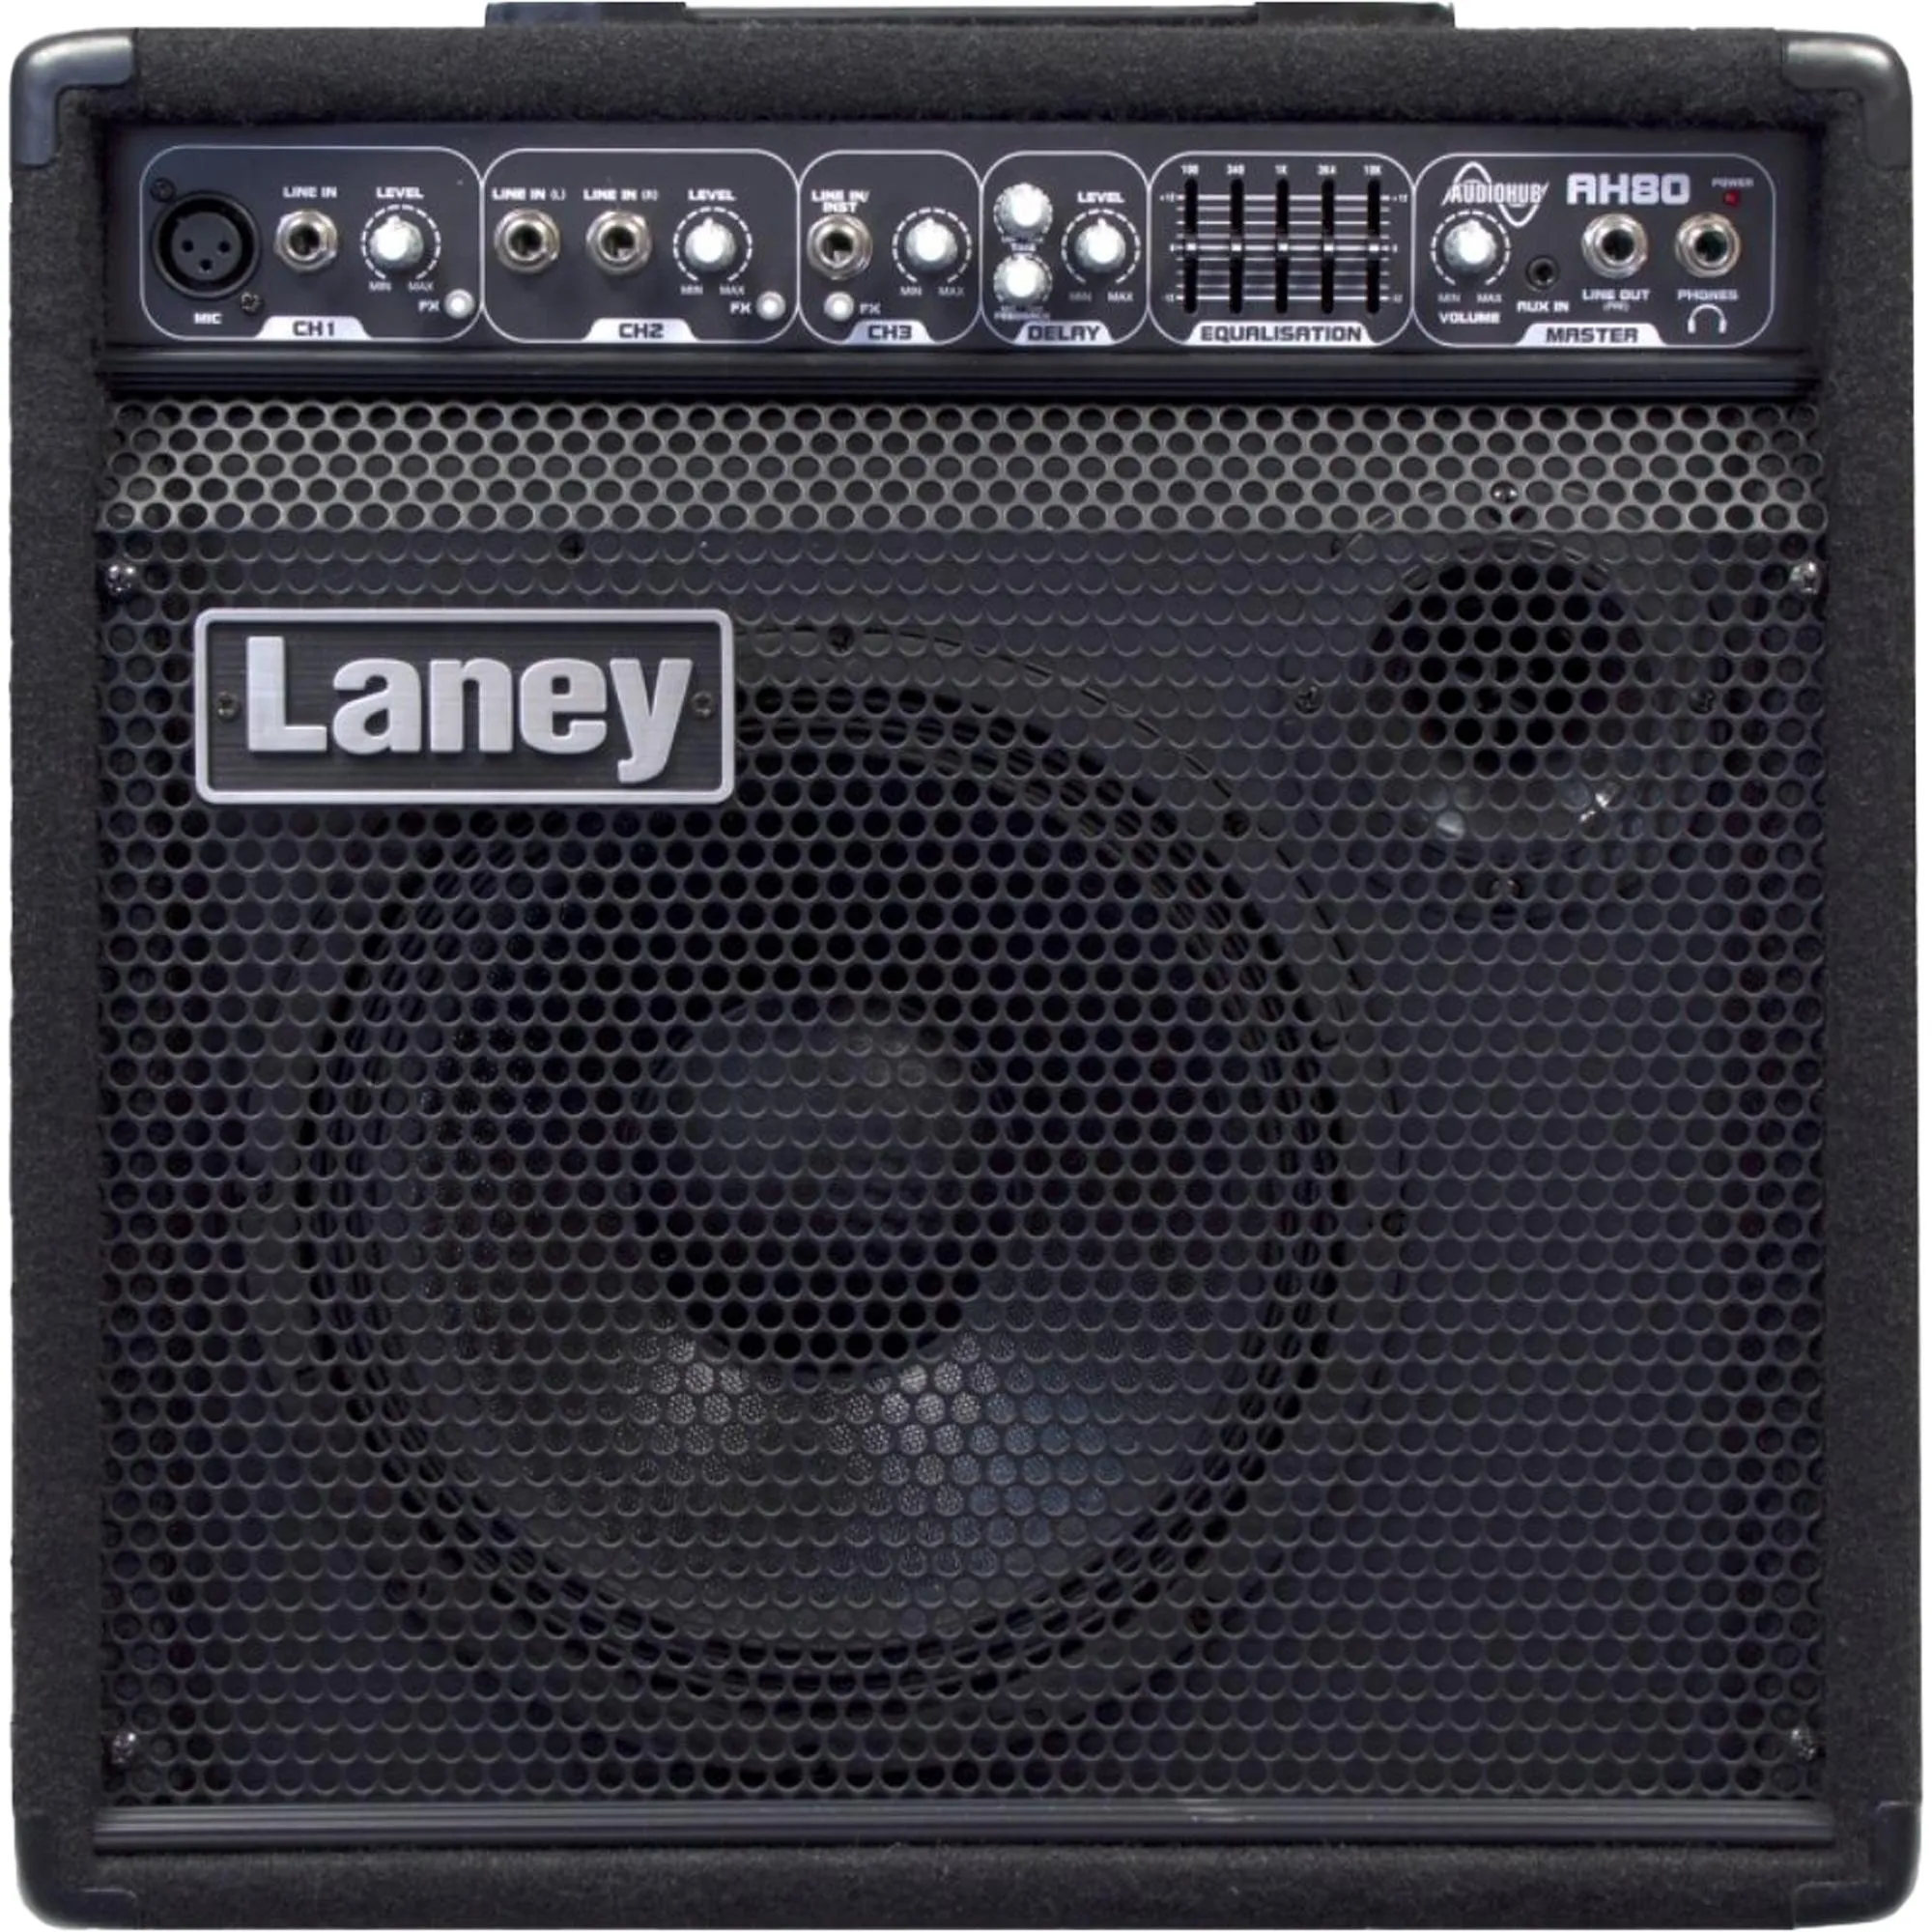 Amplificador Para Instrumentos Laney AH80 Preto por 3.870,00 à vista no boleto/pix ou parcele em até 12x sem juros. Compre na loja Mundomax!